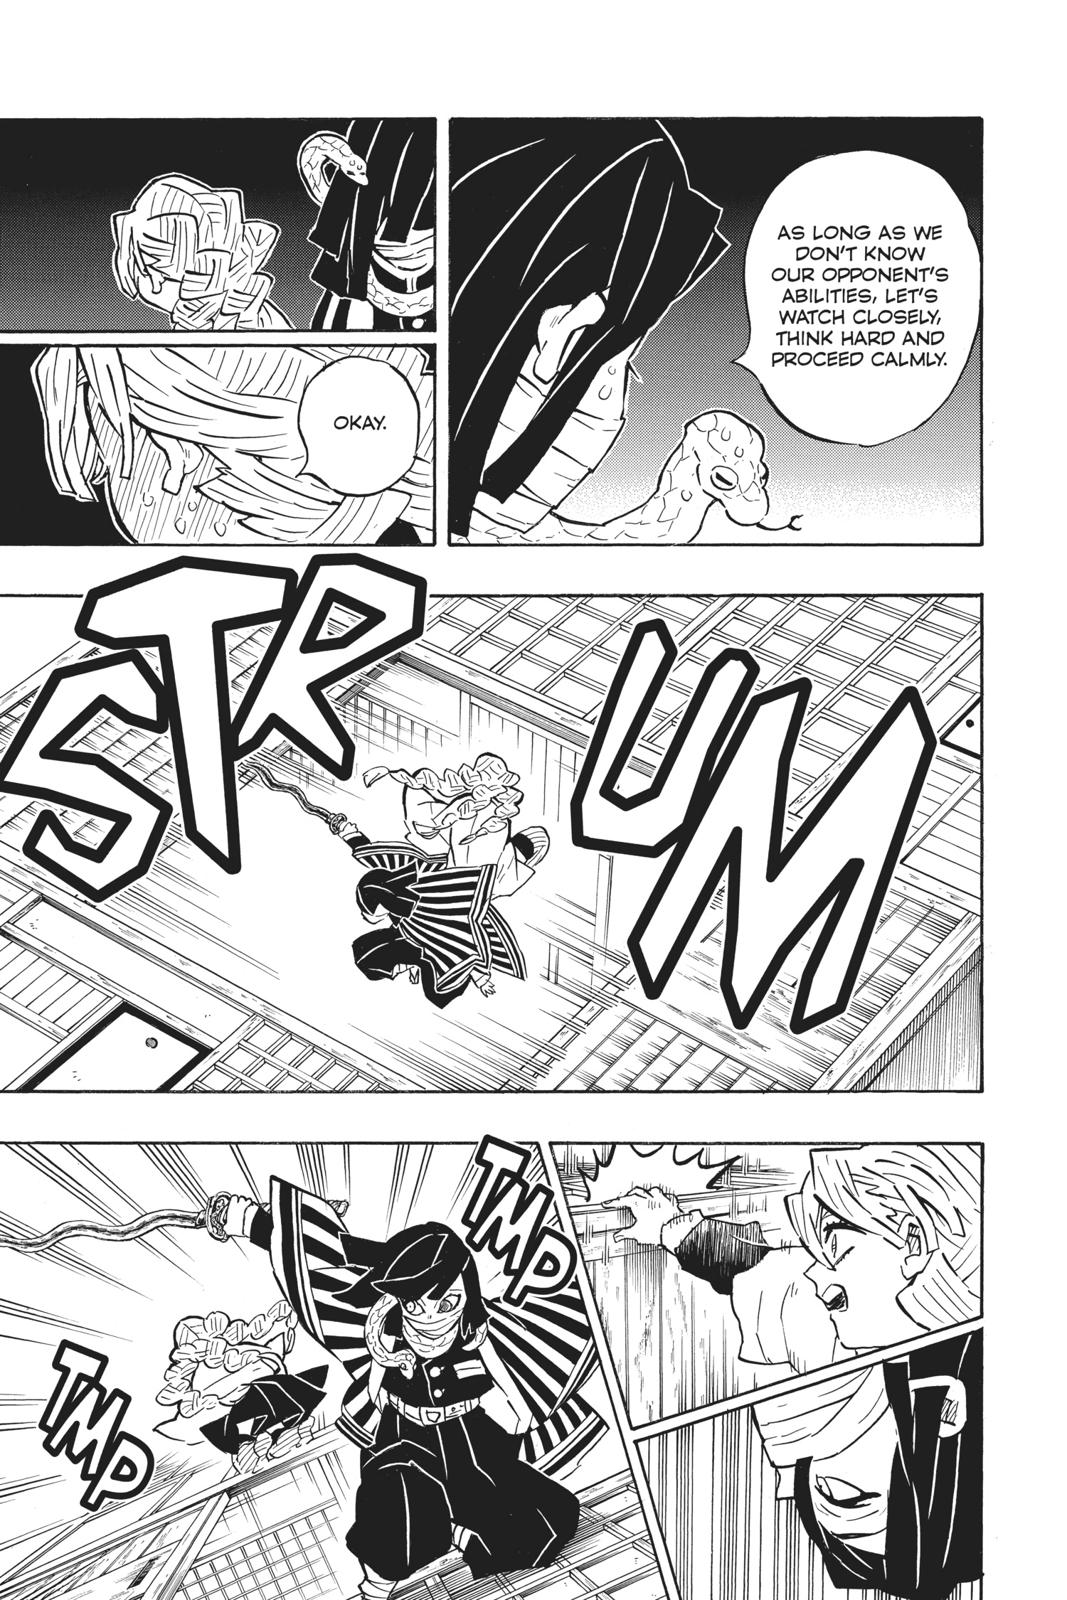 Demon Slayer Manga Manga Chapter - 164 - image 6